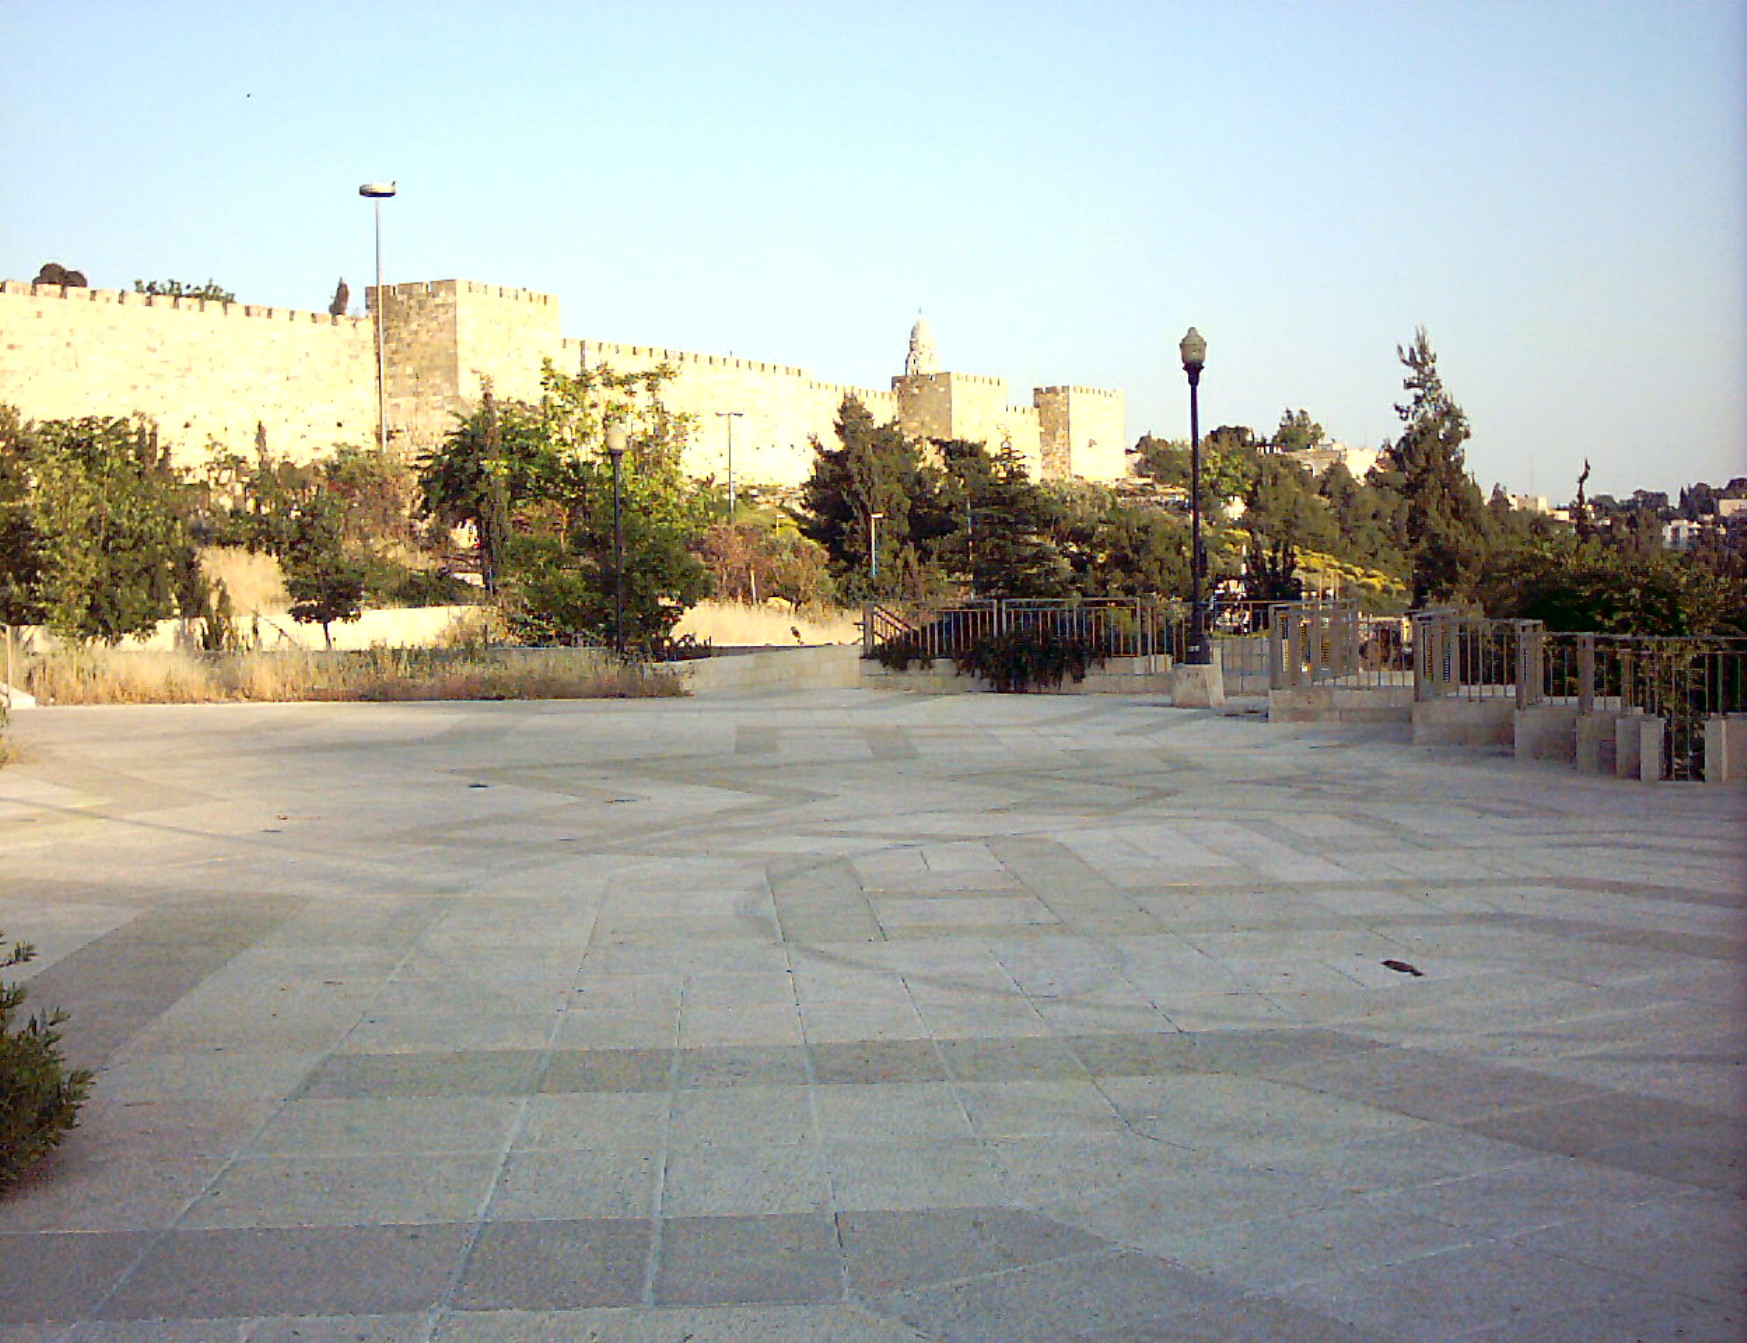 walls-of-jerusalem-old-city-1-21-05-2003.jpg